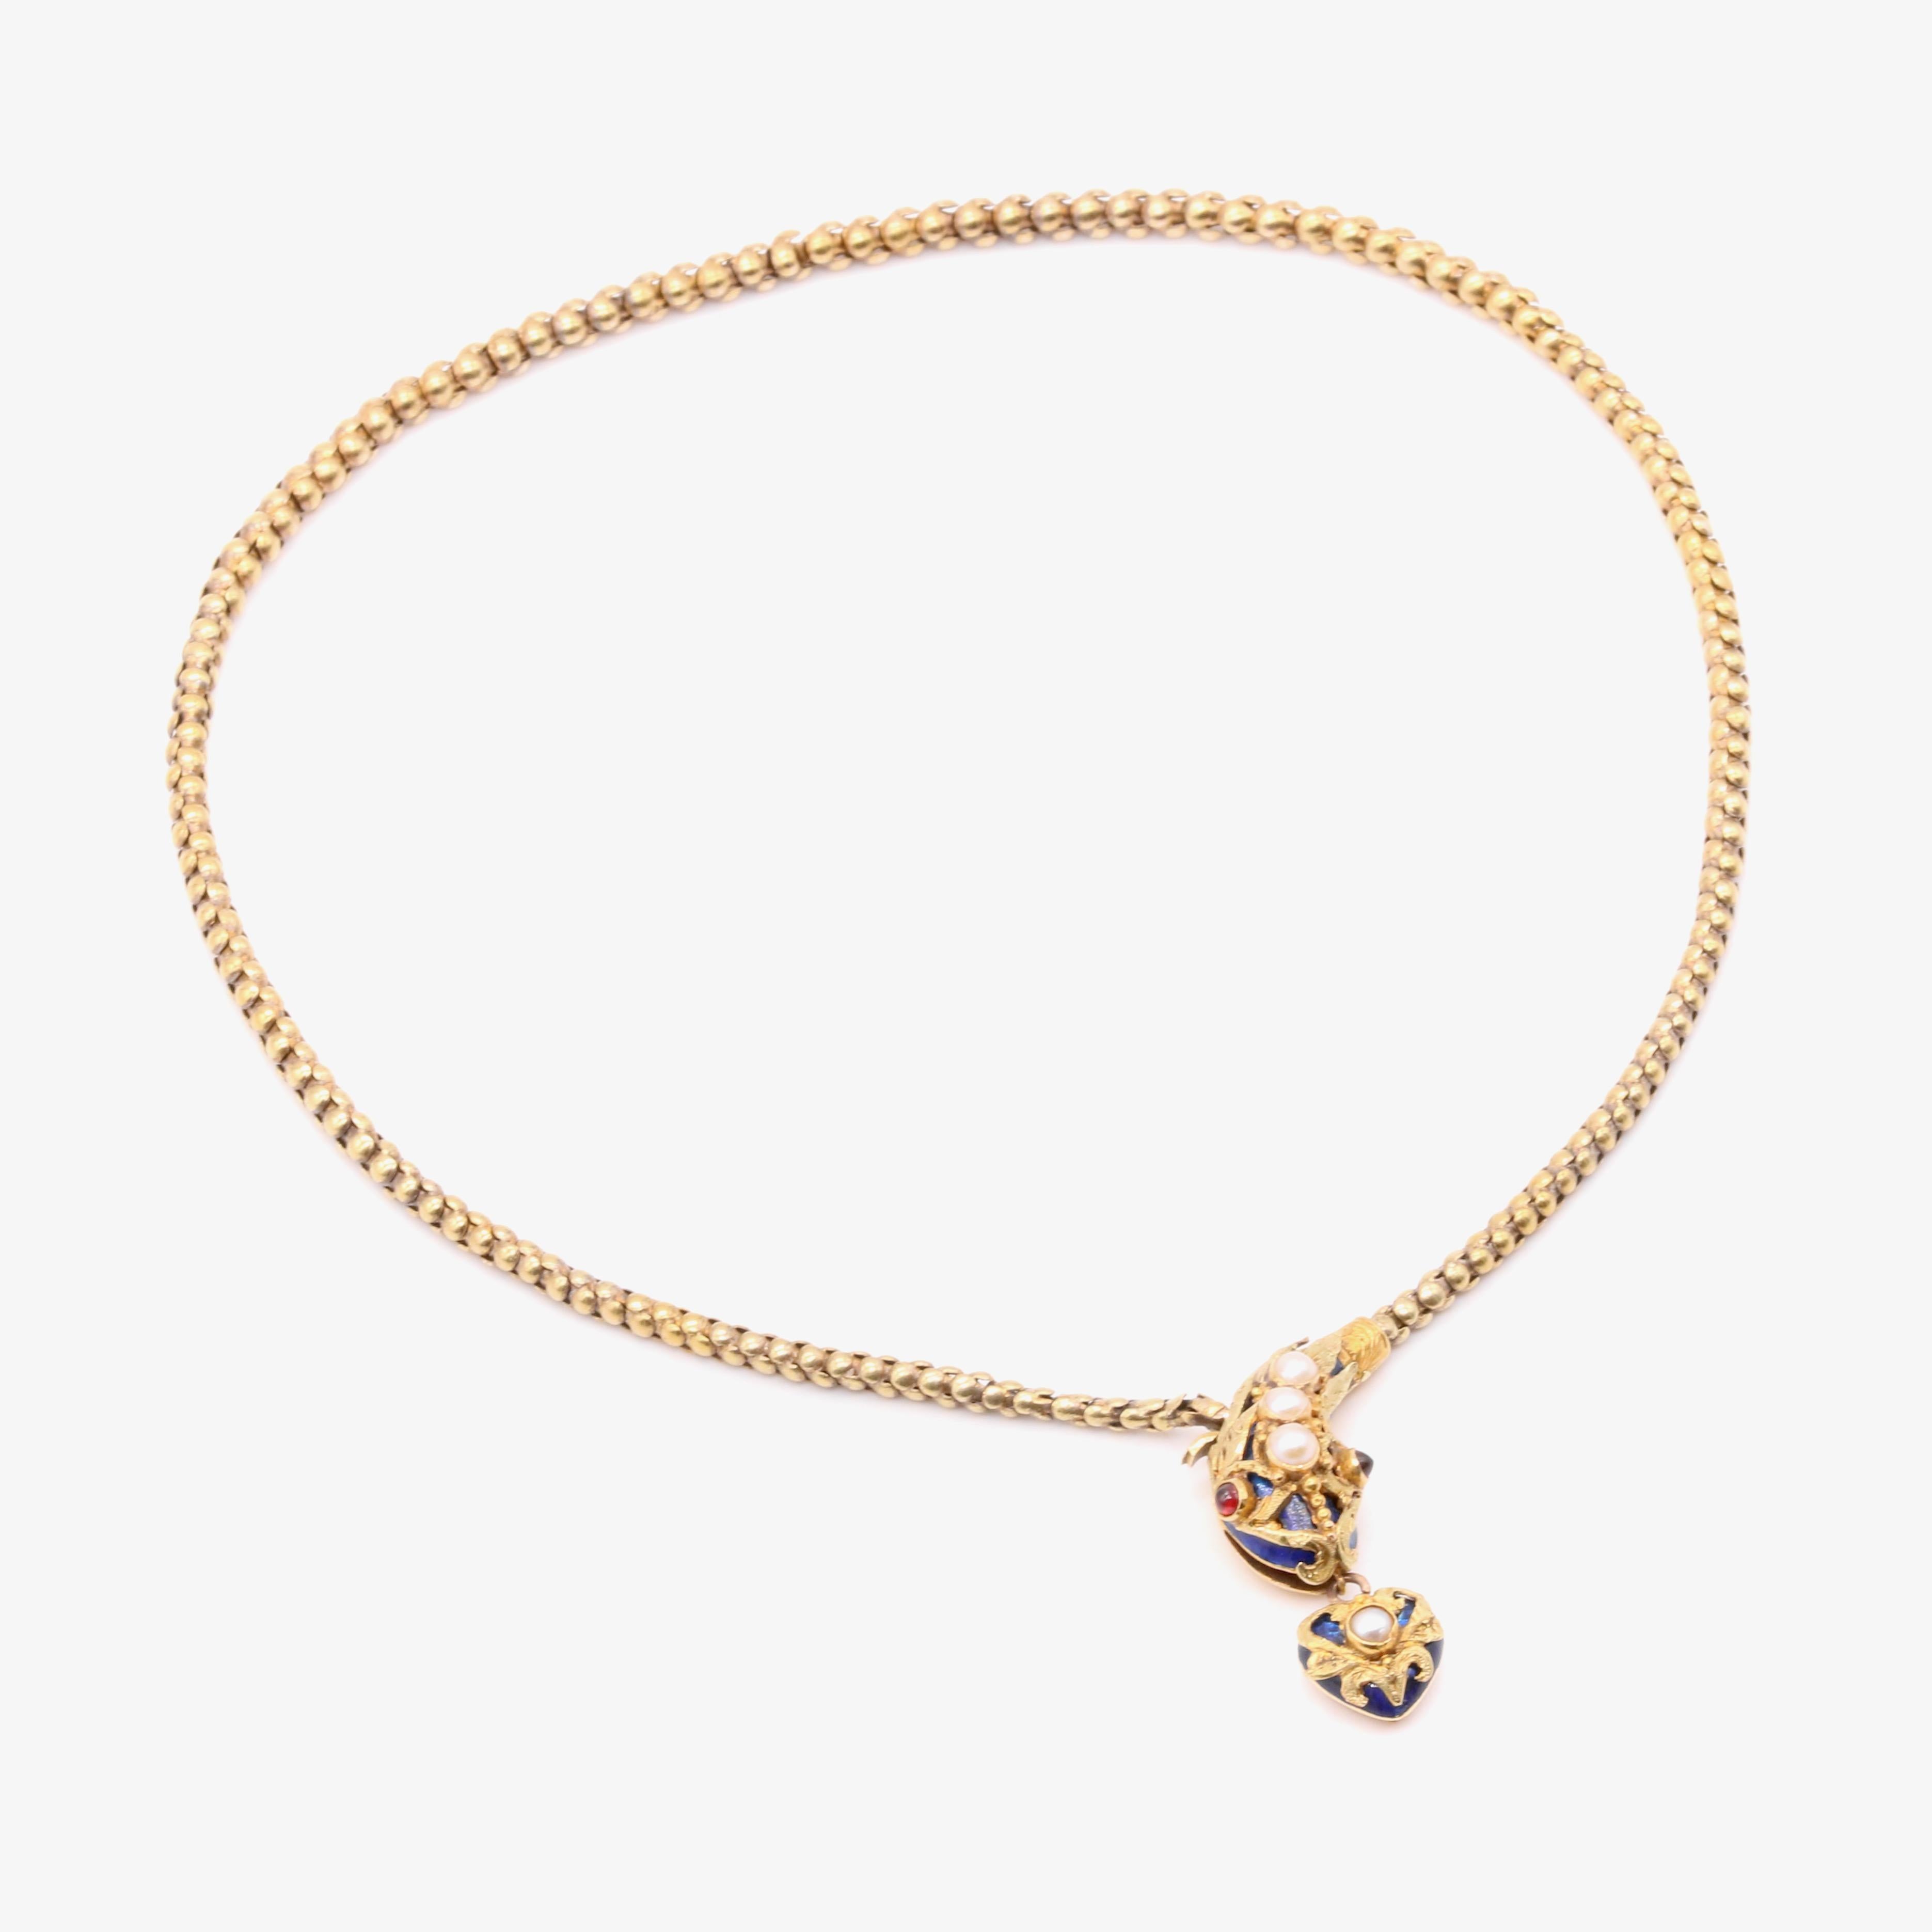 Antique Victorian 1850s 18K Gold Blue Enamel Pearl & Garnet Snake Necklace For Sale 4